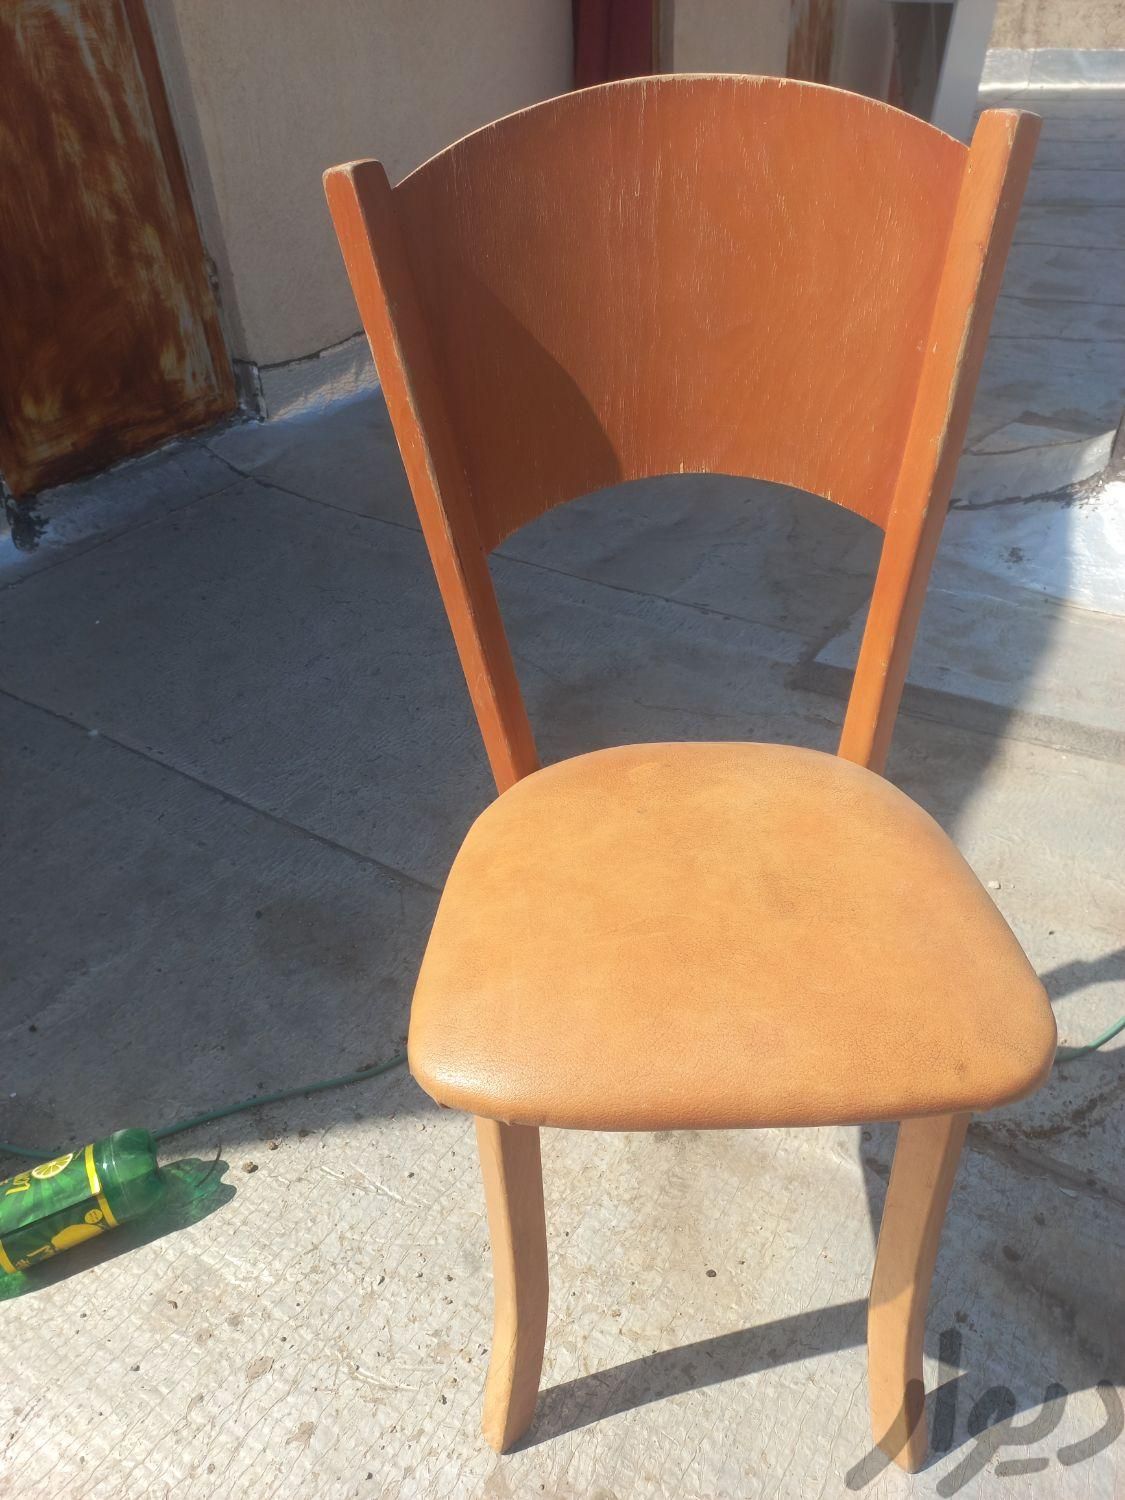 صندلی چوبی  قدمت ۴۰سال|اشیای عتیقه|کرج, منظریه|دیوار